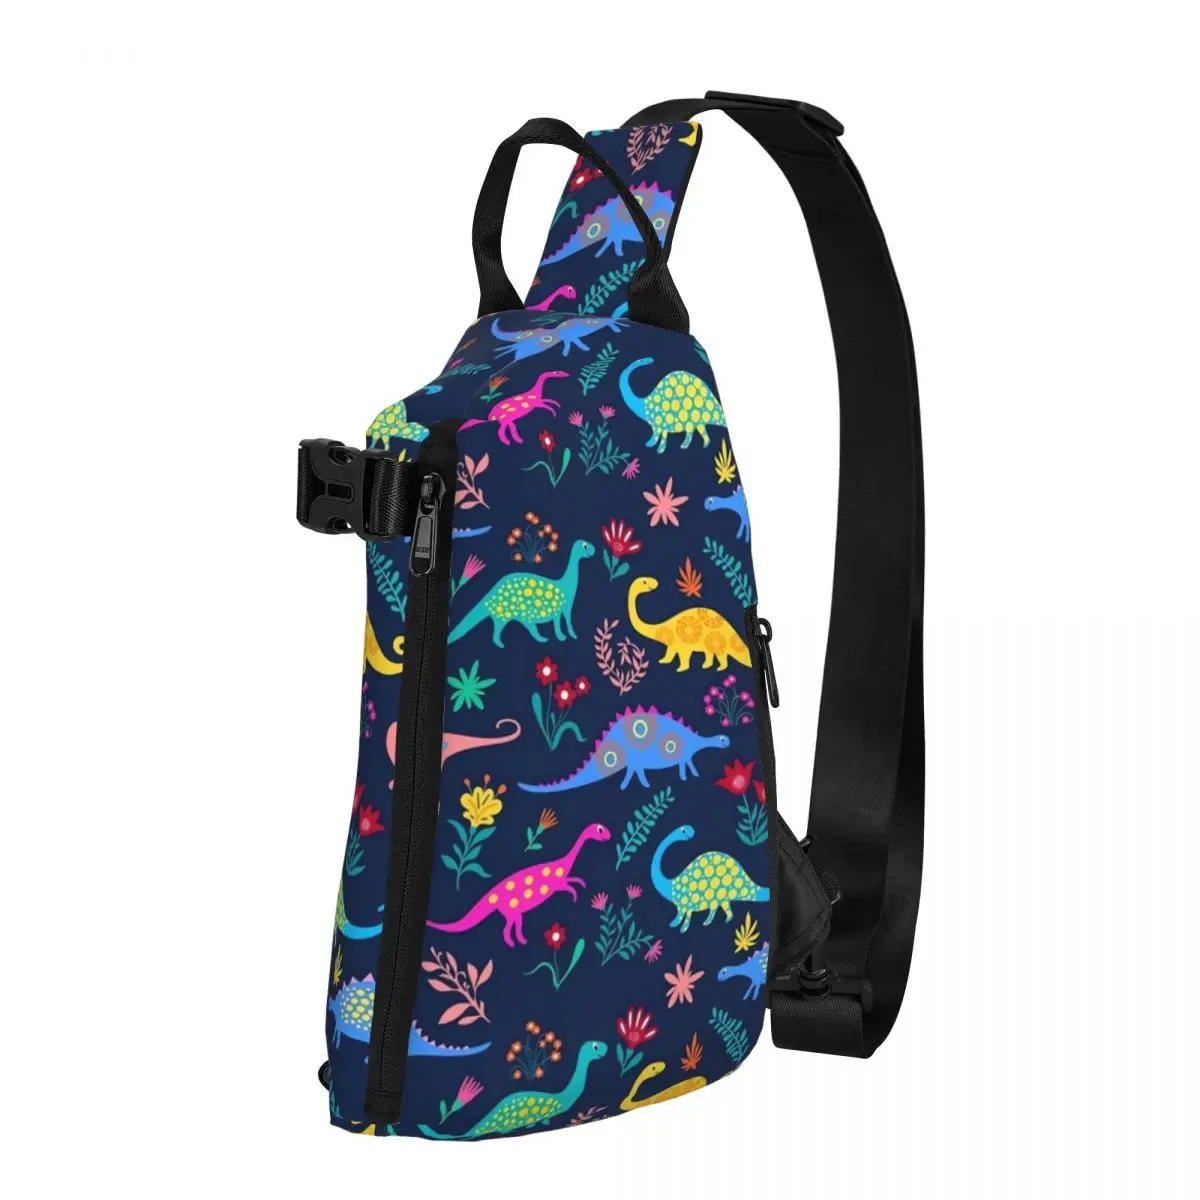 

Нагрудные сумки с милым принтом динозавра, мужская спортивная сумка через плечо с красочными животными, маленькая сумка с винтажным принтом, сумки-слинг для телефона и бега